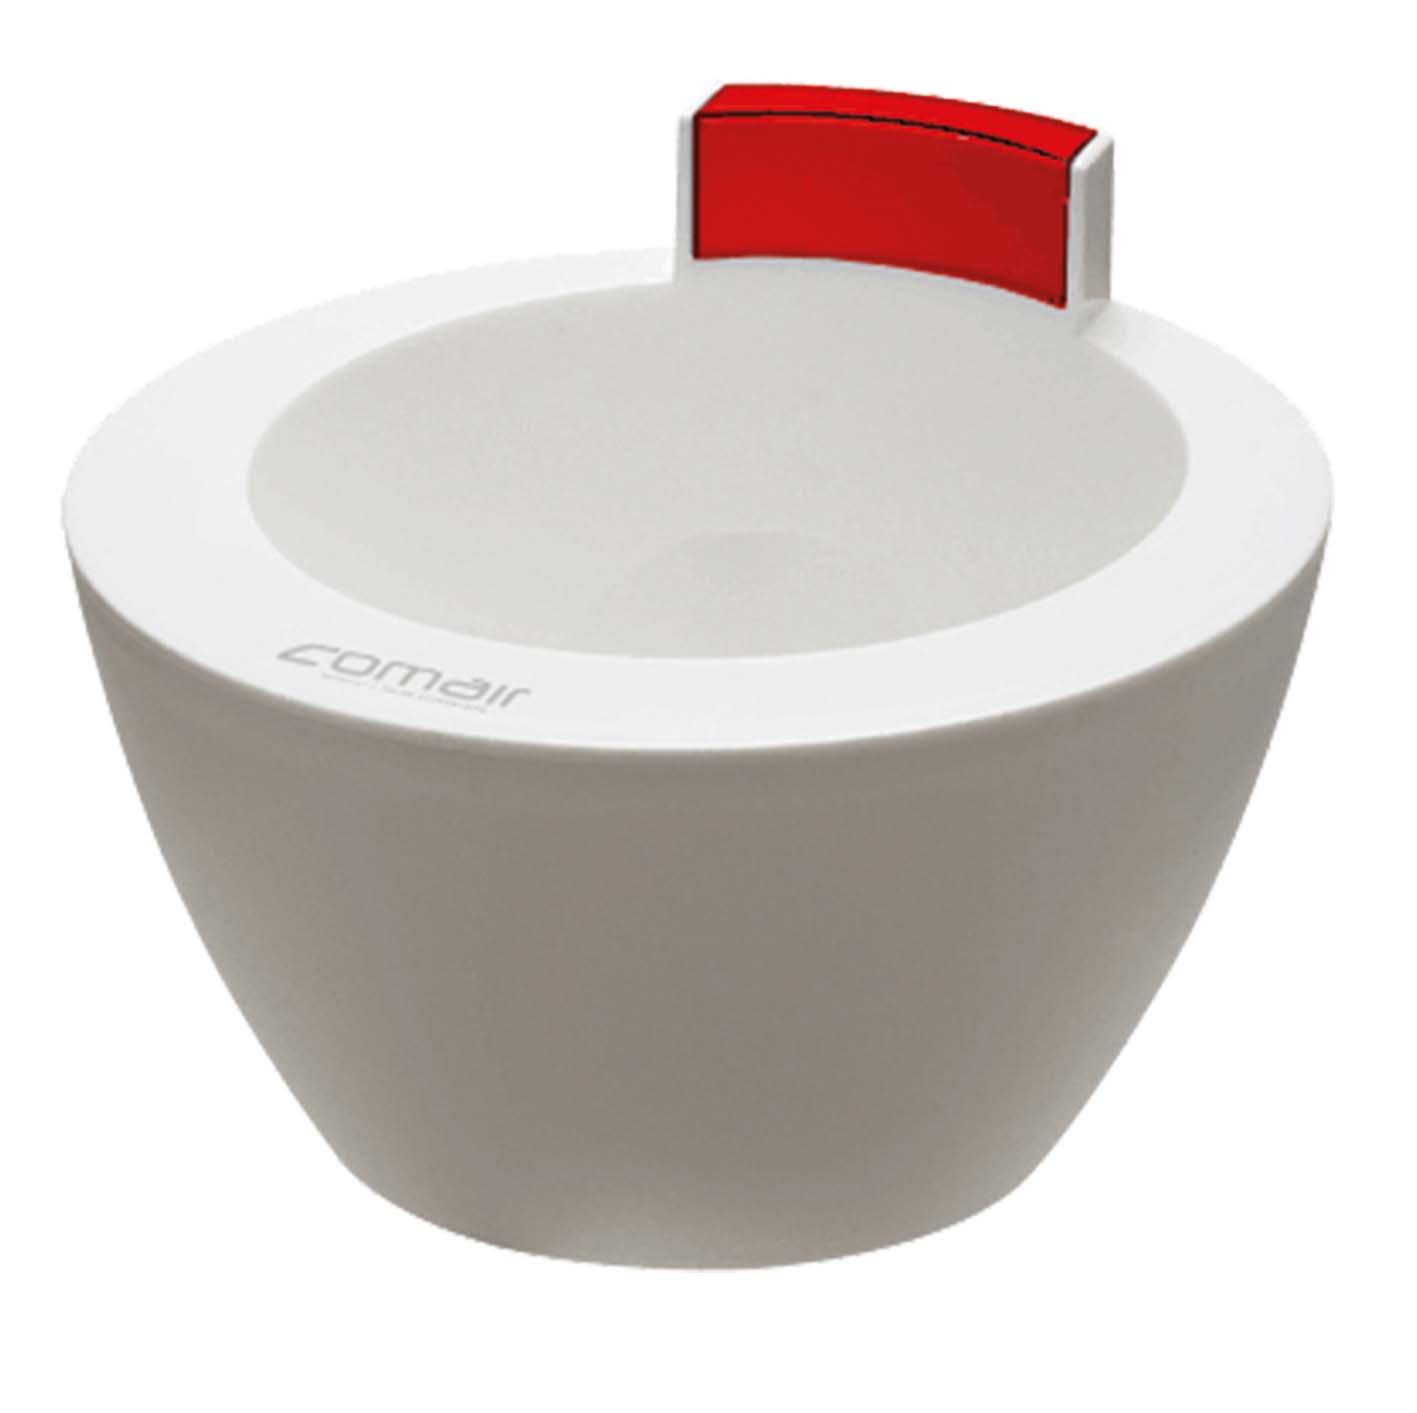  Treatment Bowl weiß/rot 350ml     Anrührschüssel